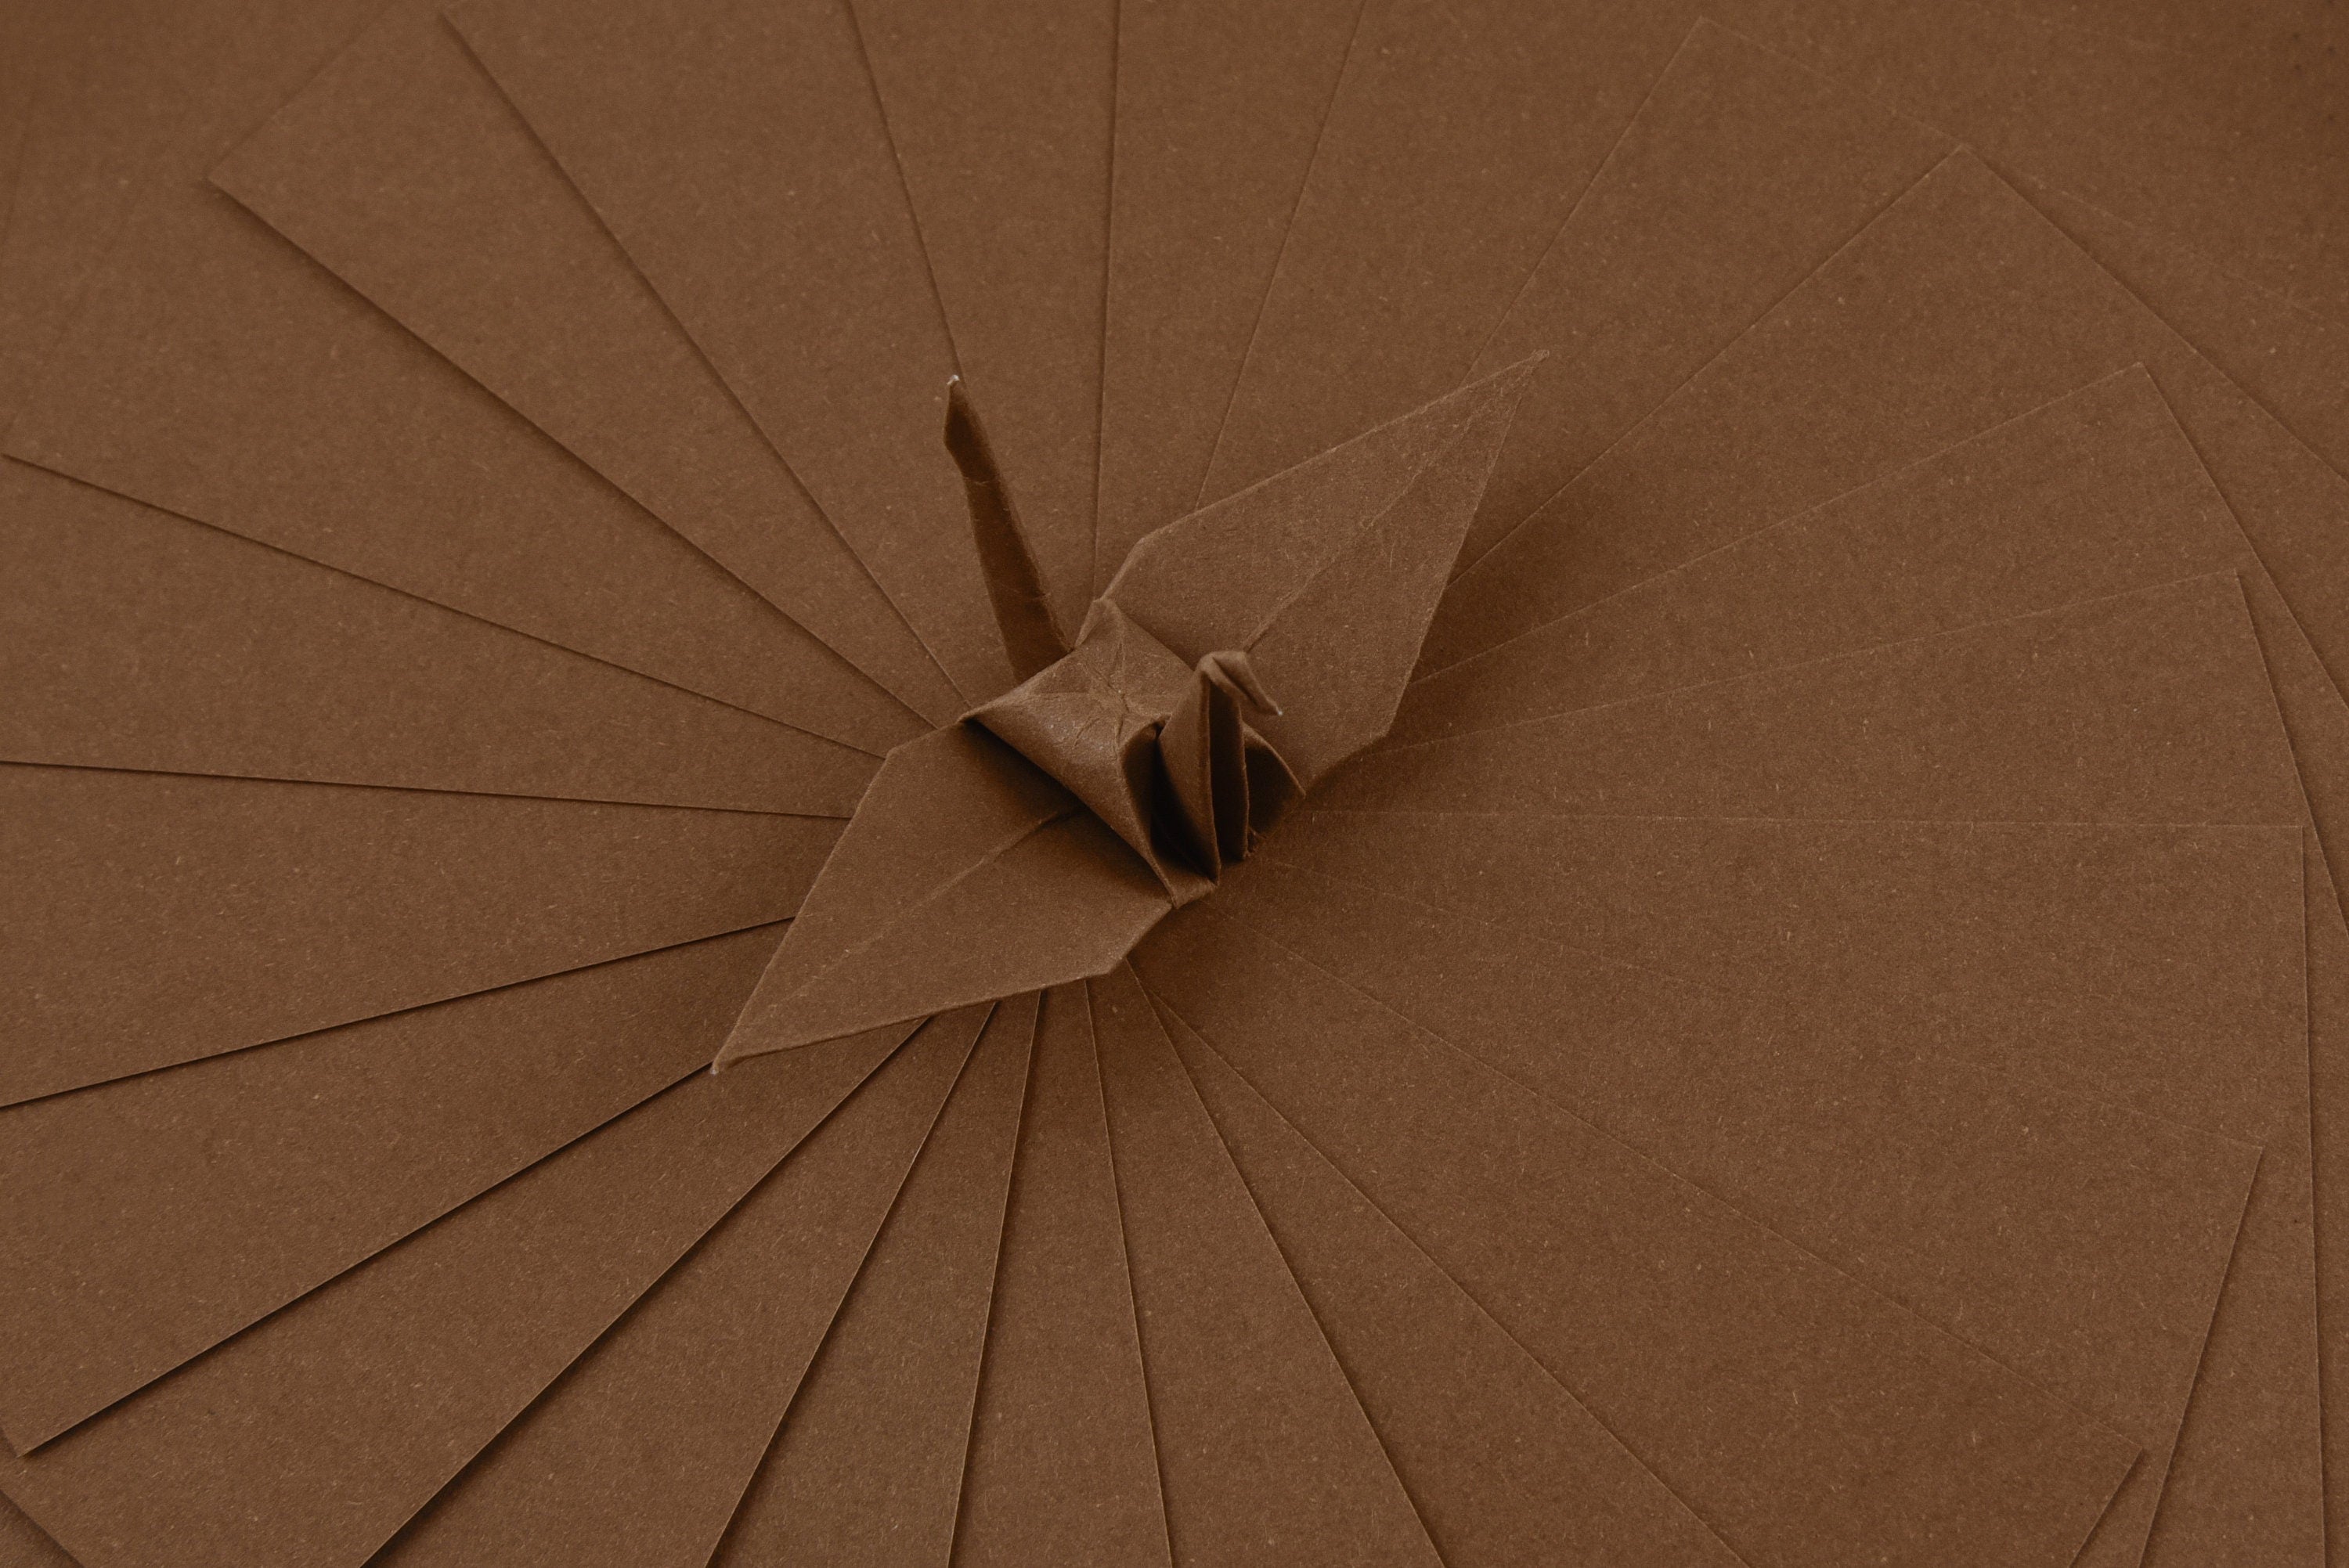 100 hojas de papel base para origami -6x6 pulgadas - Paquete de papel cuadrado para plegado, grullas de origami y decoración - S27